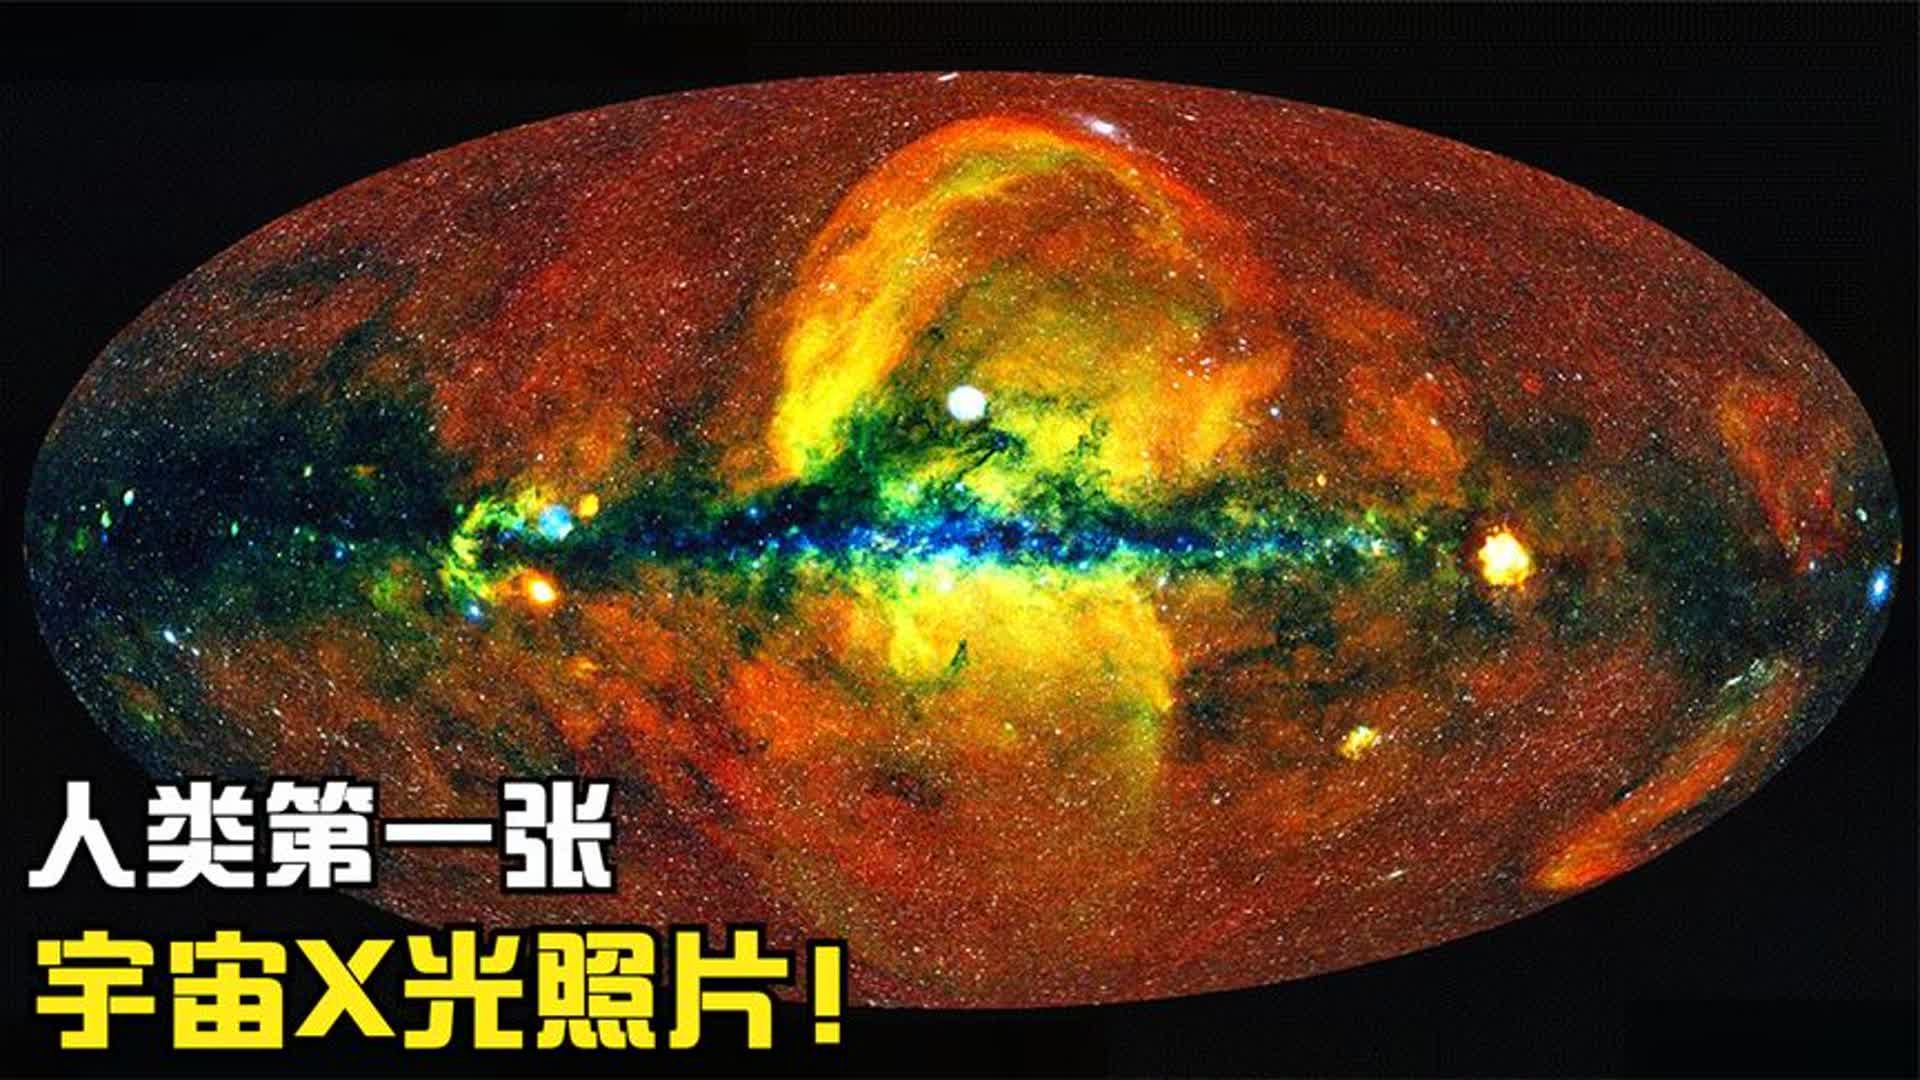 宇宙第一张x光全景照片,10万个星系团,300万颗黑洞!